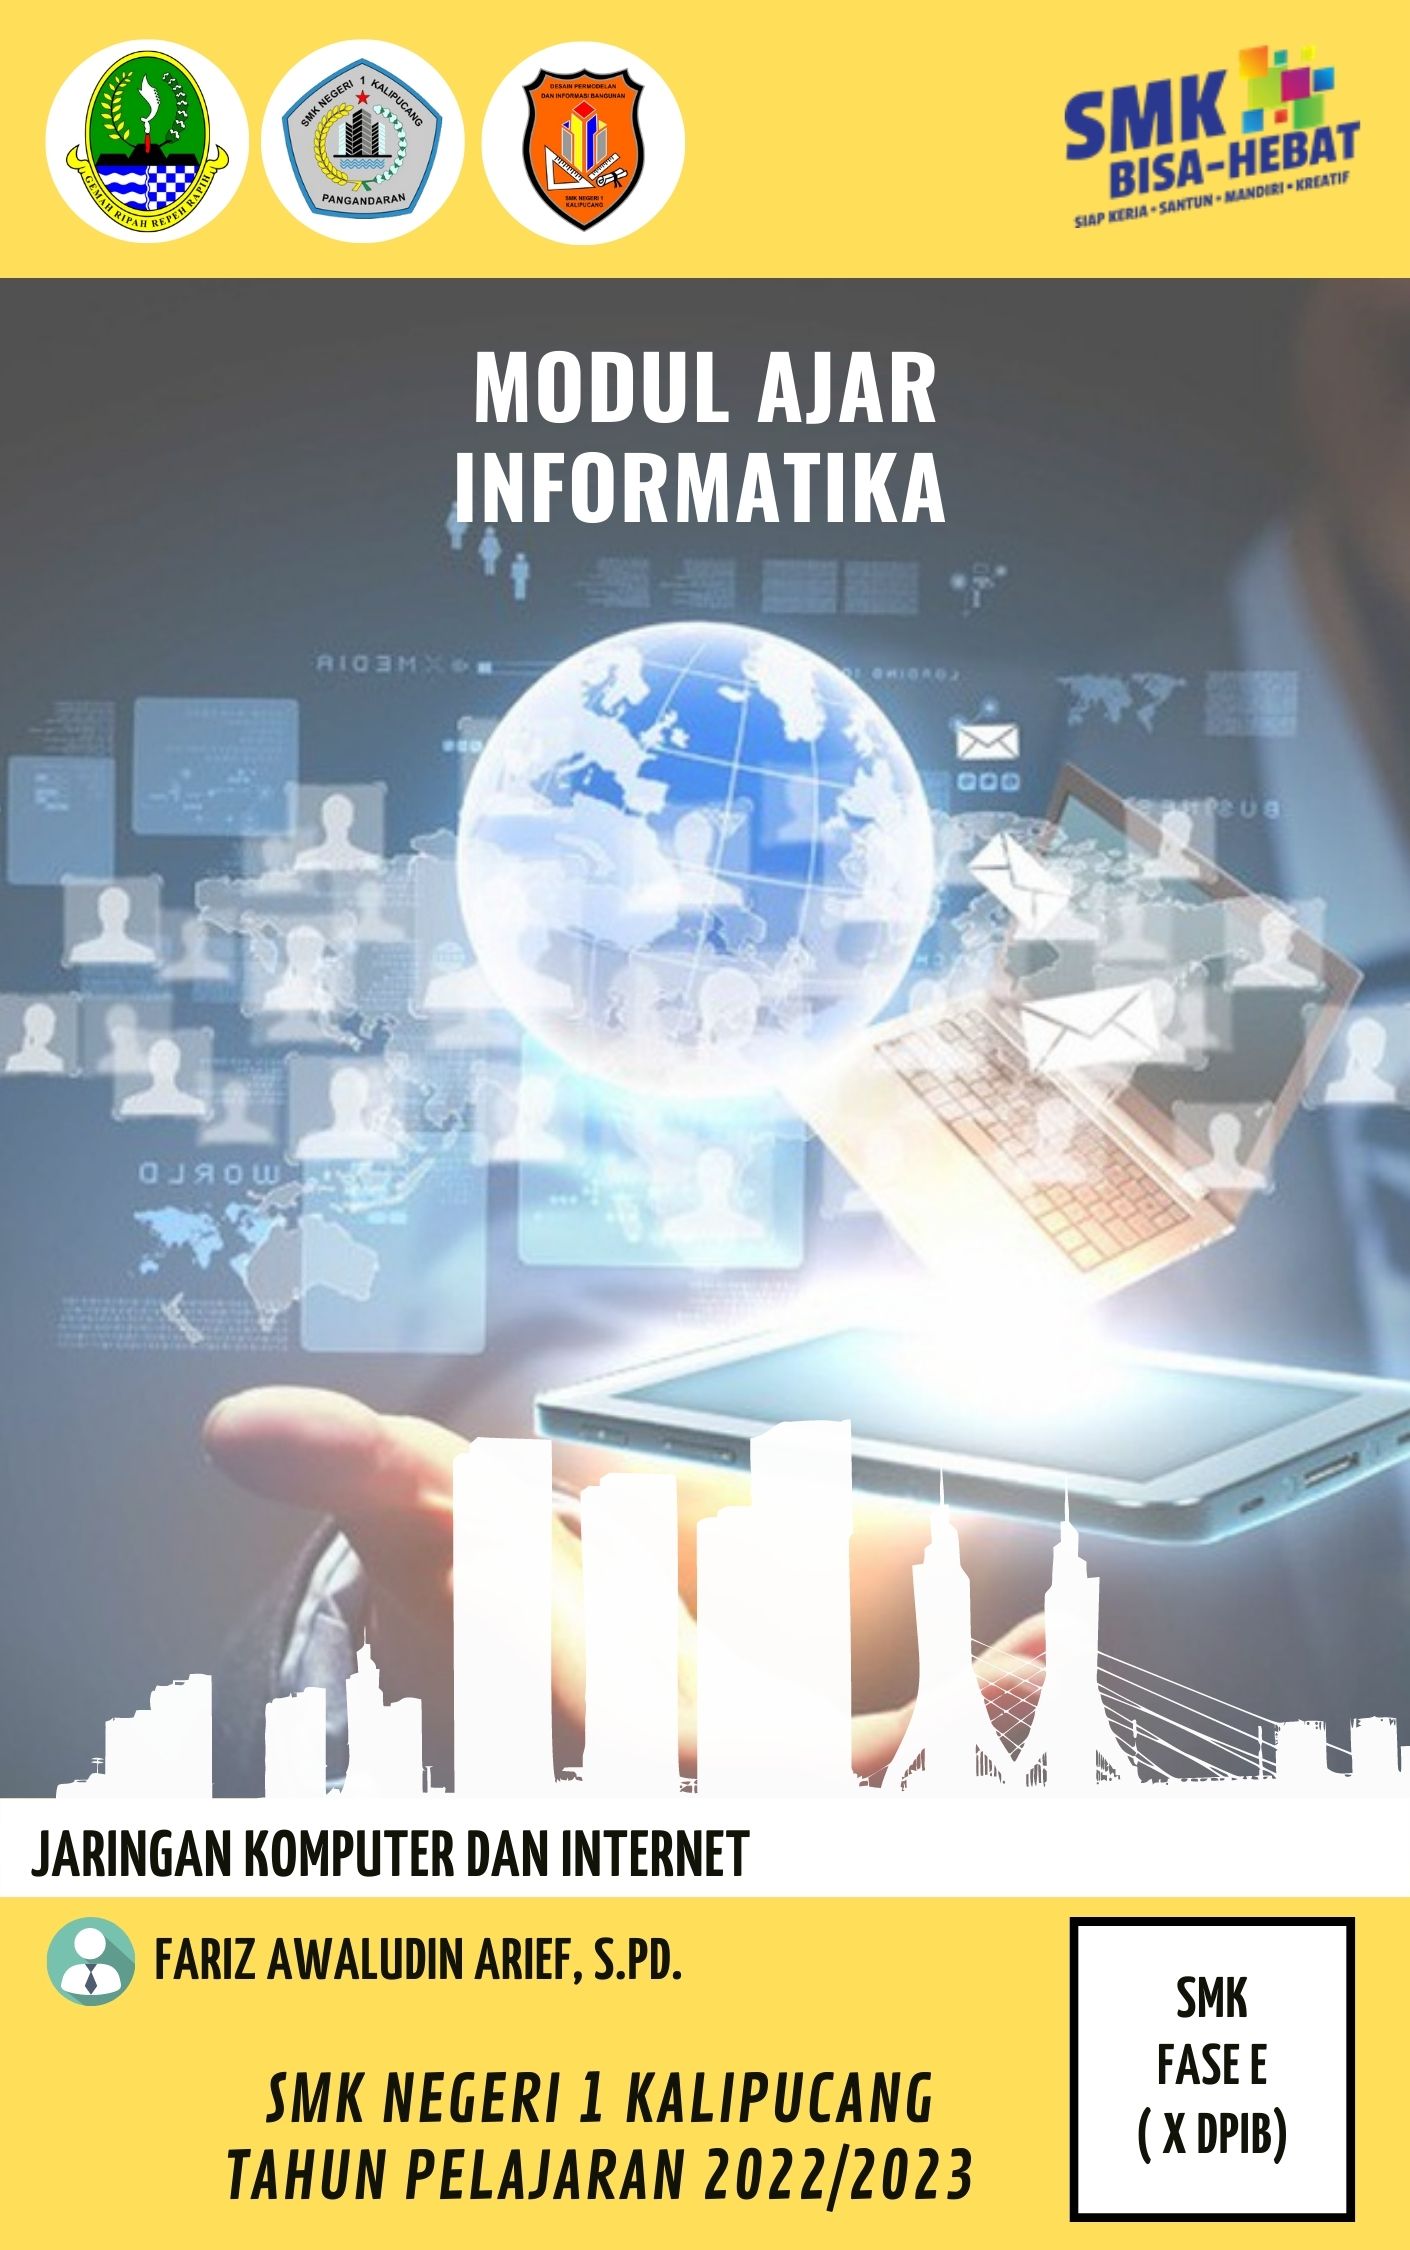 Download Lengkap Modul Ajar Informatika SMK/SMA (Fase E) 2022